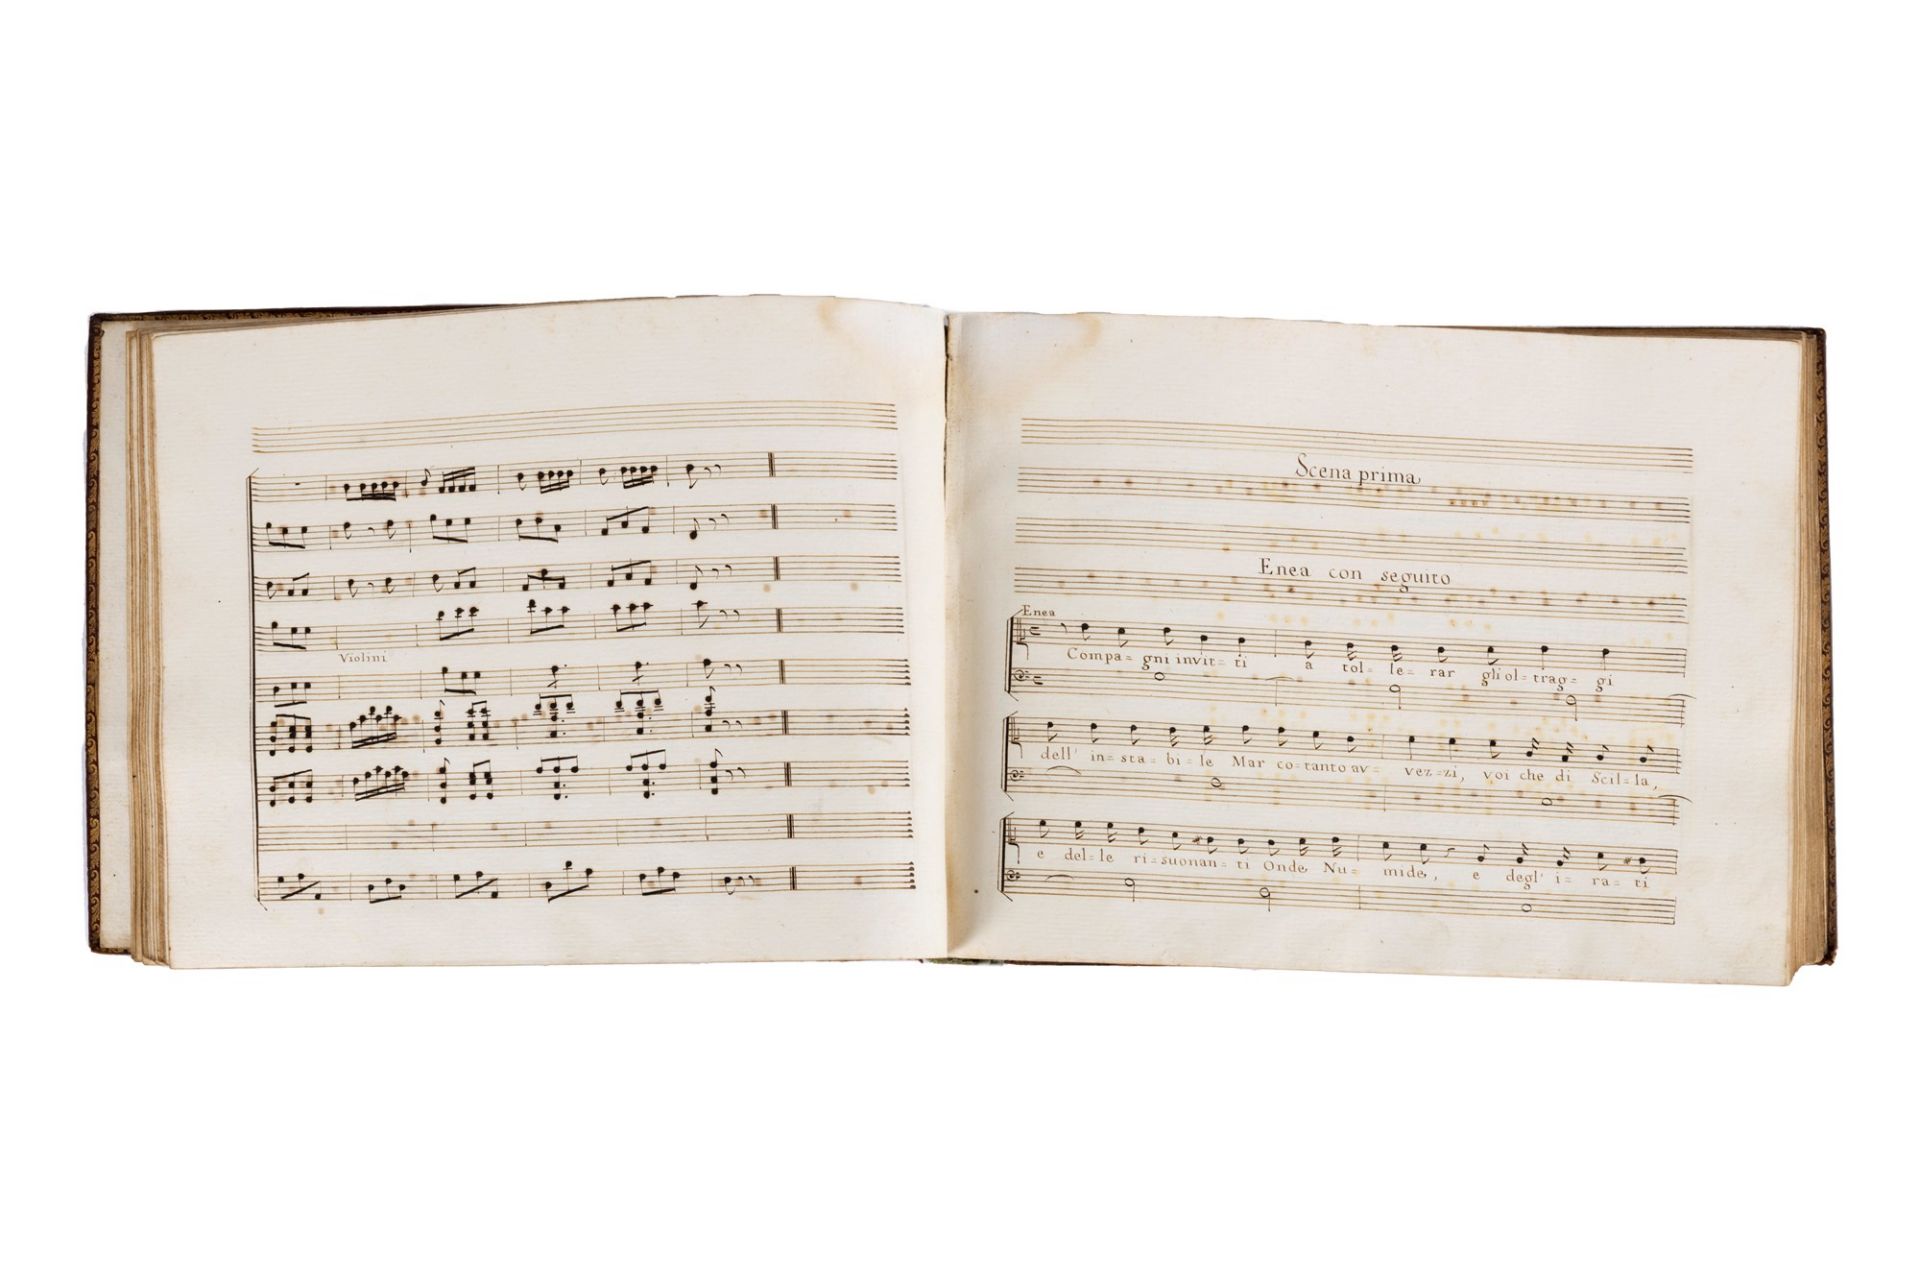 Peruzzi, Bindo Giovanni - Score of the cantata entitled The arrival of Aeneas in Lazio - Image 2 of 3